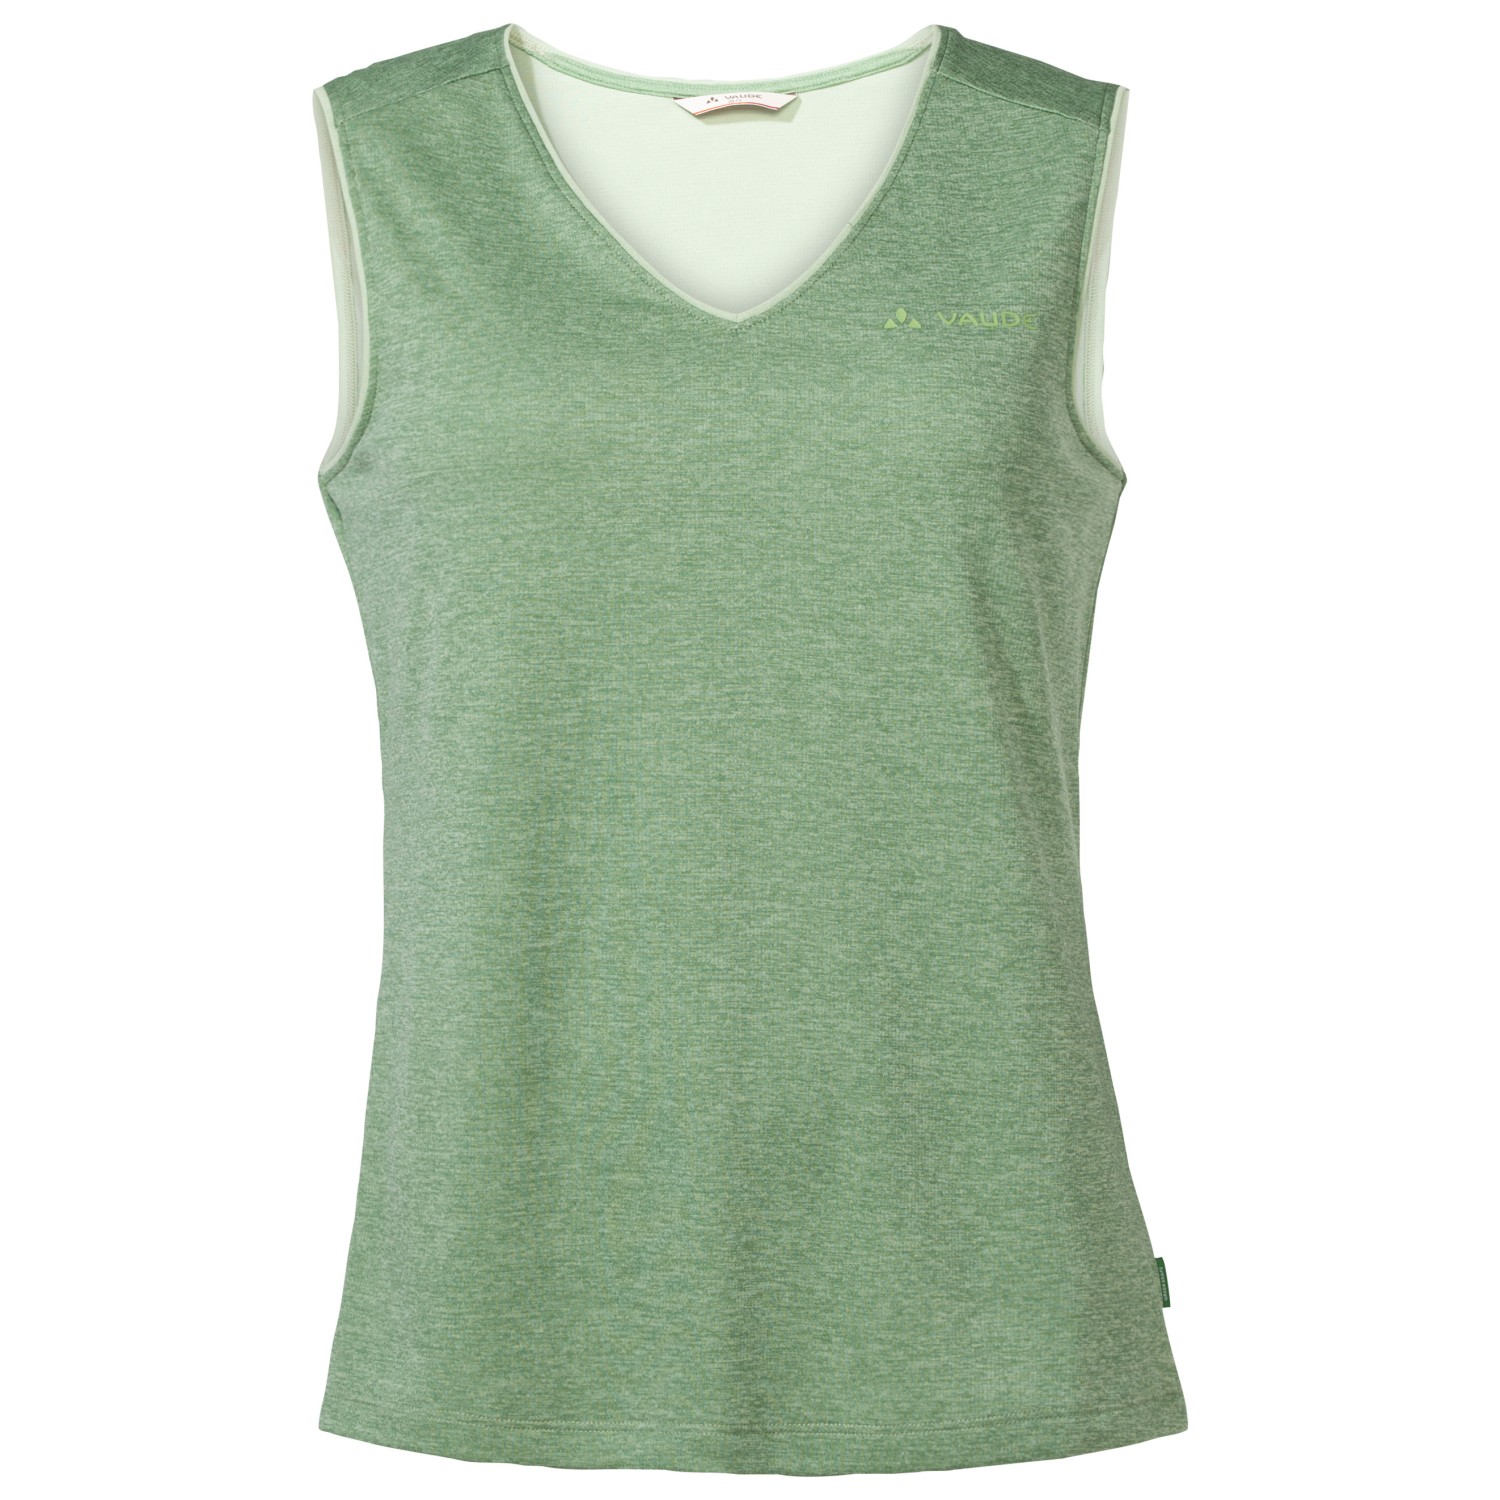 Функциональная рубашка Vaude Women's Essential Top, цвет Willow Green женский укороченный топ для занятий йогой и спортом